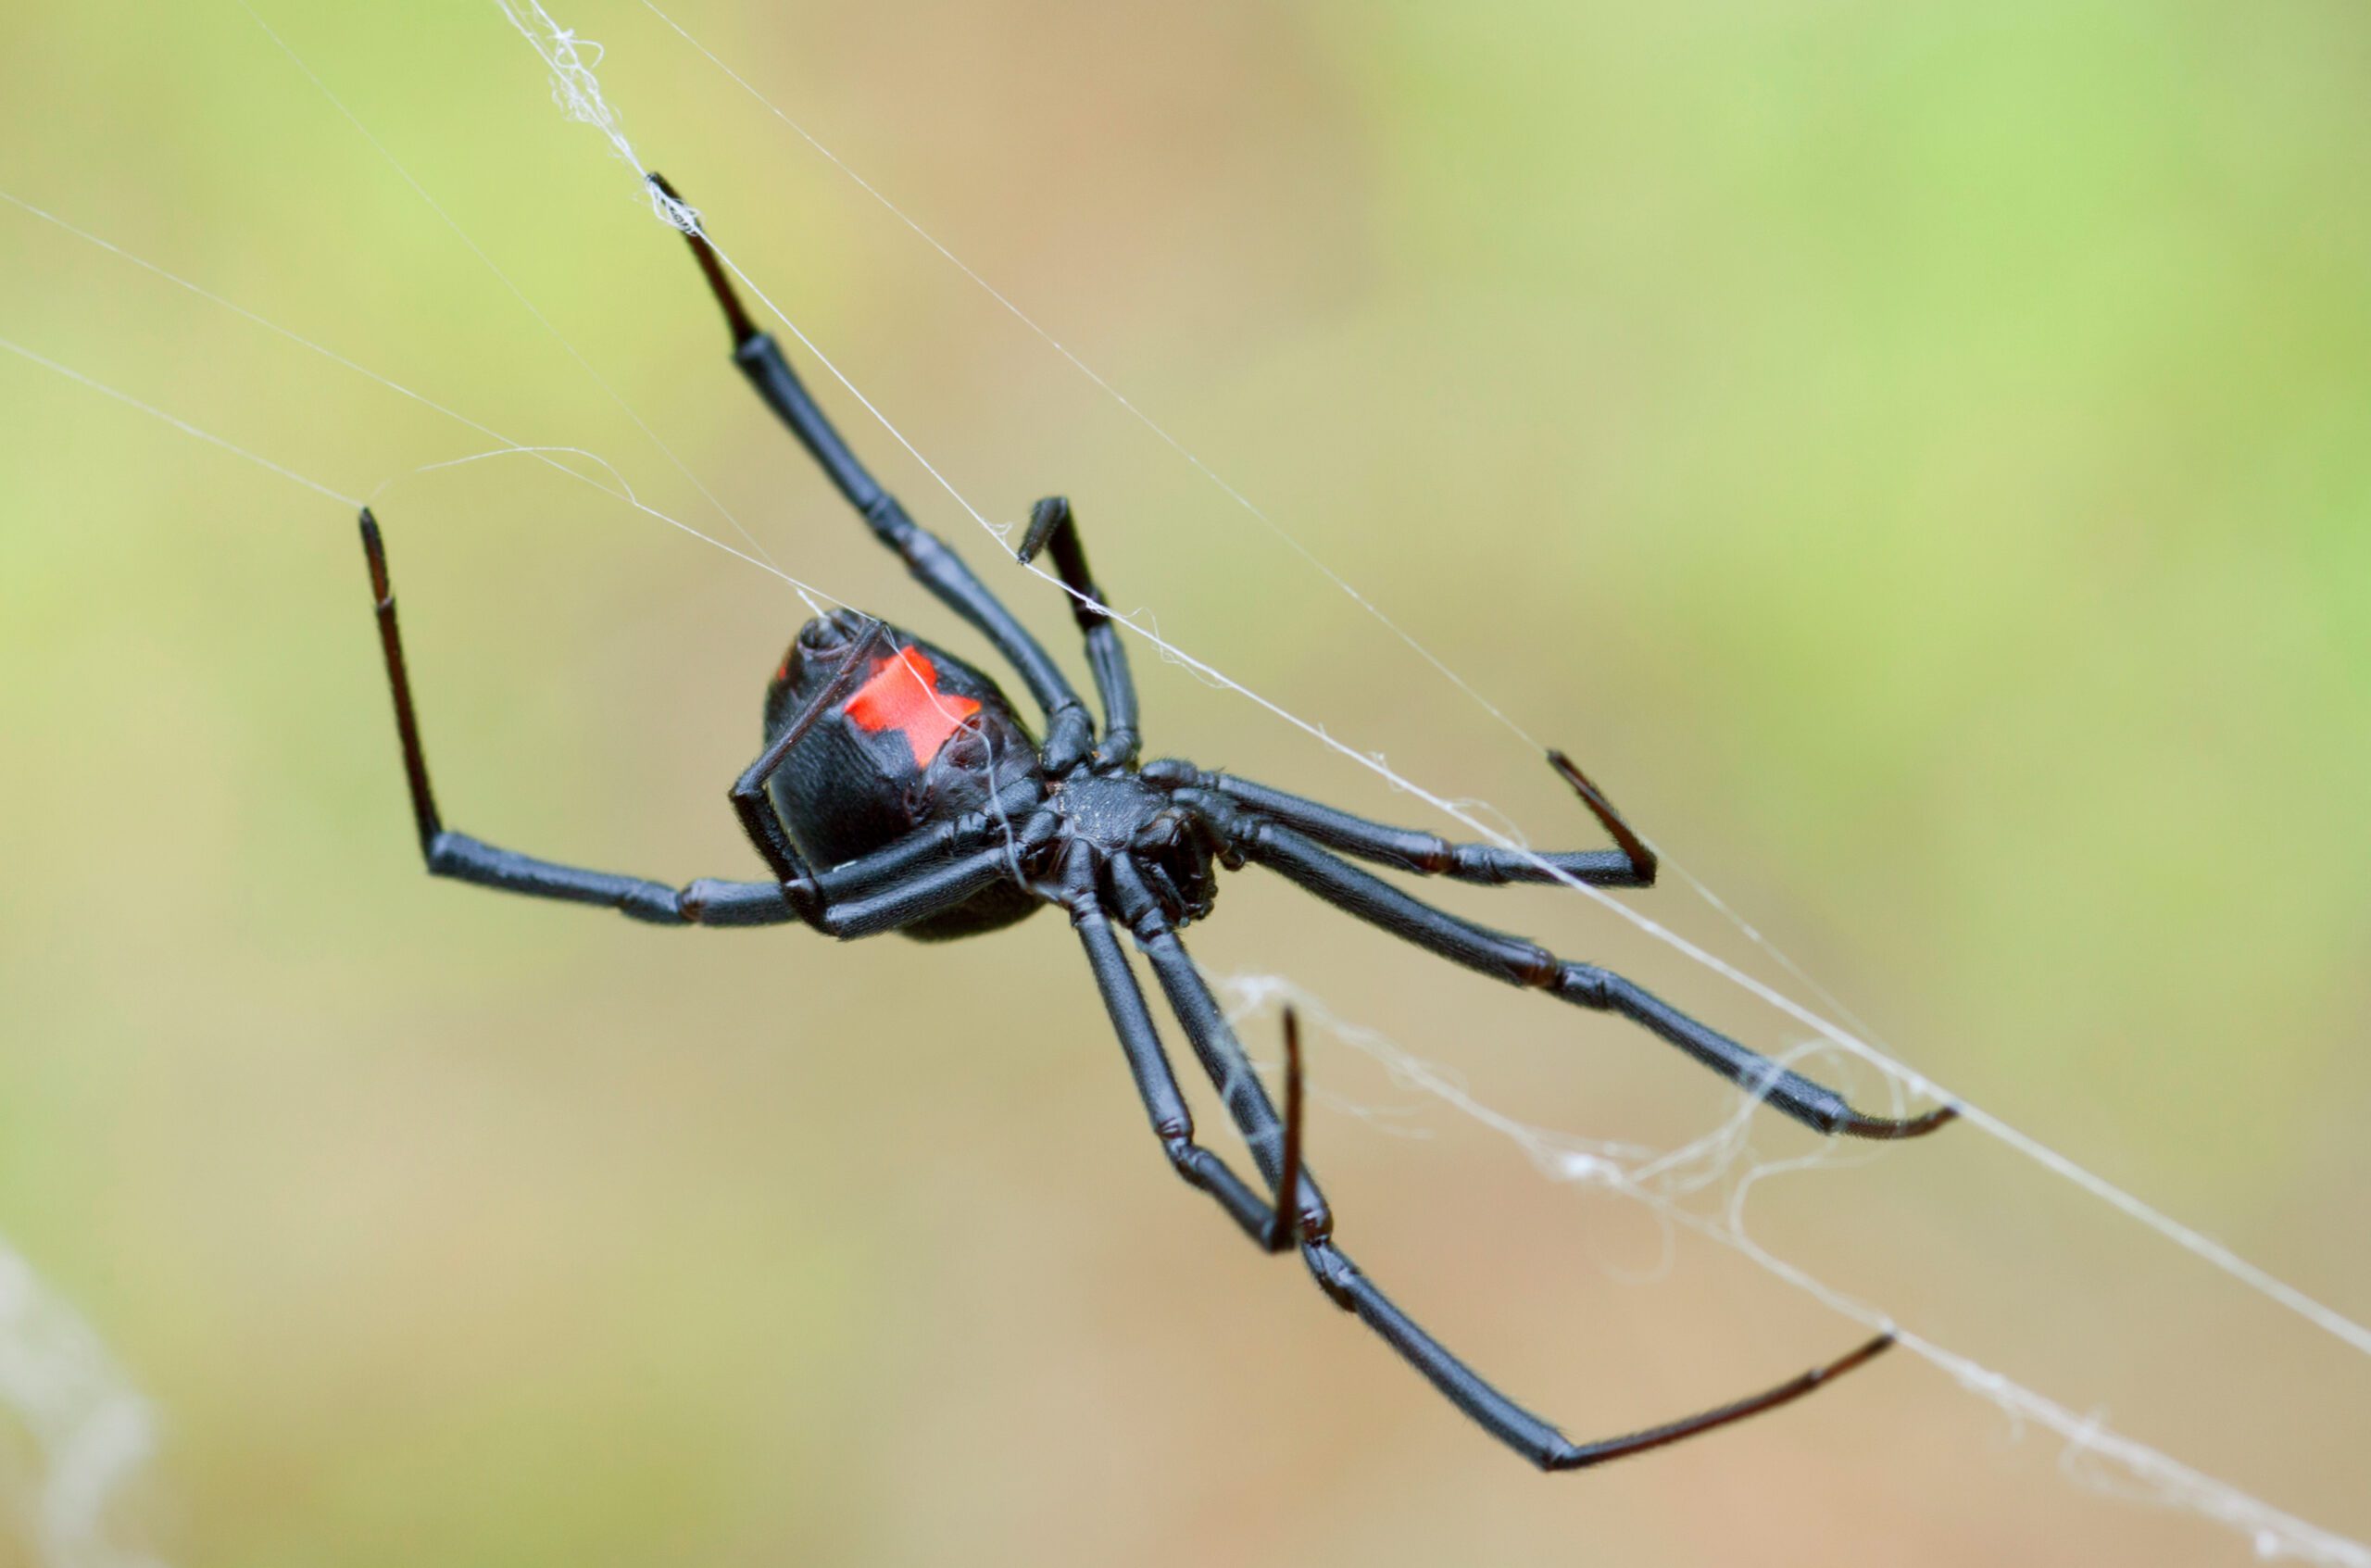 Female Black Widow Weaving Her Web